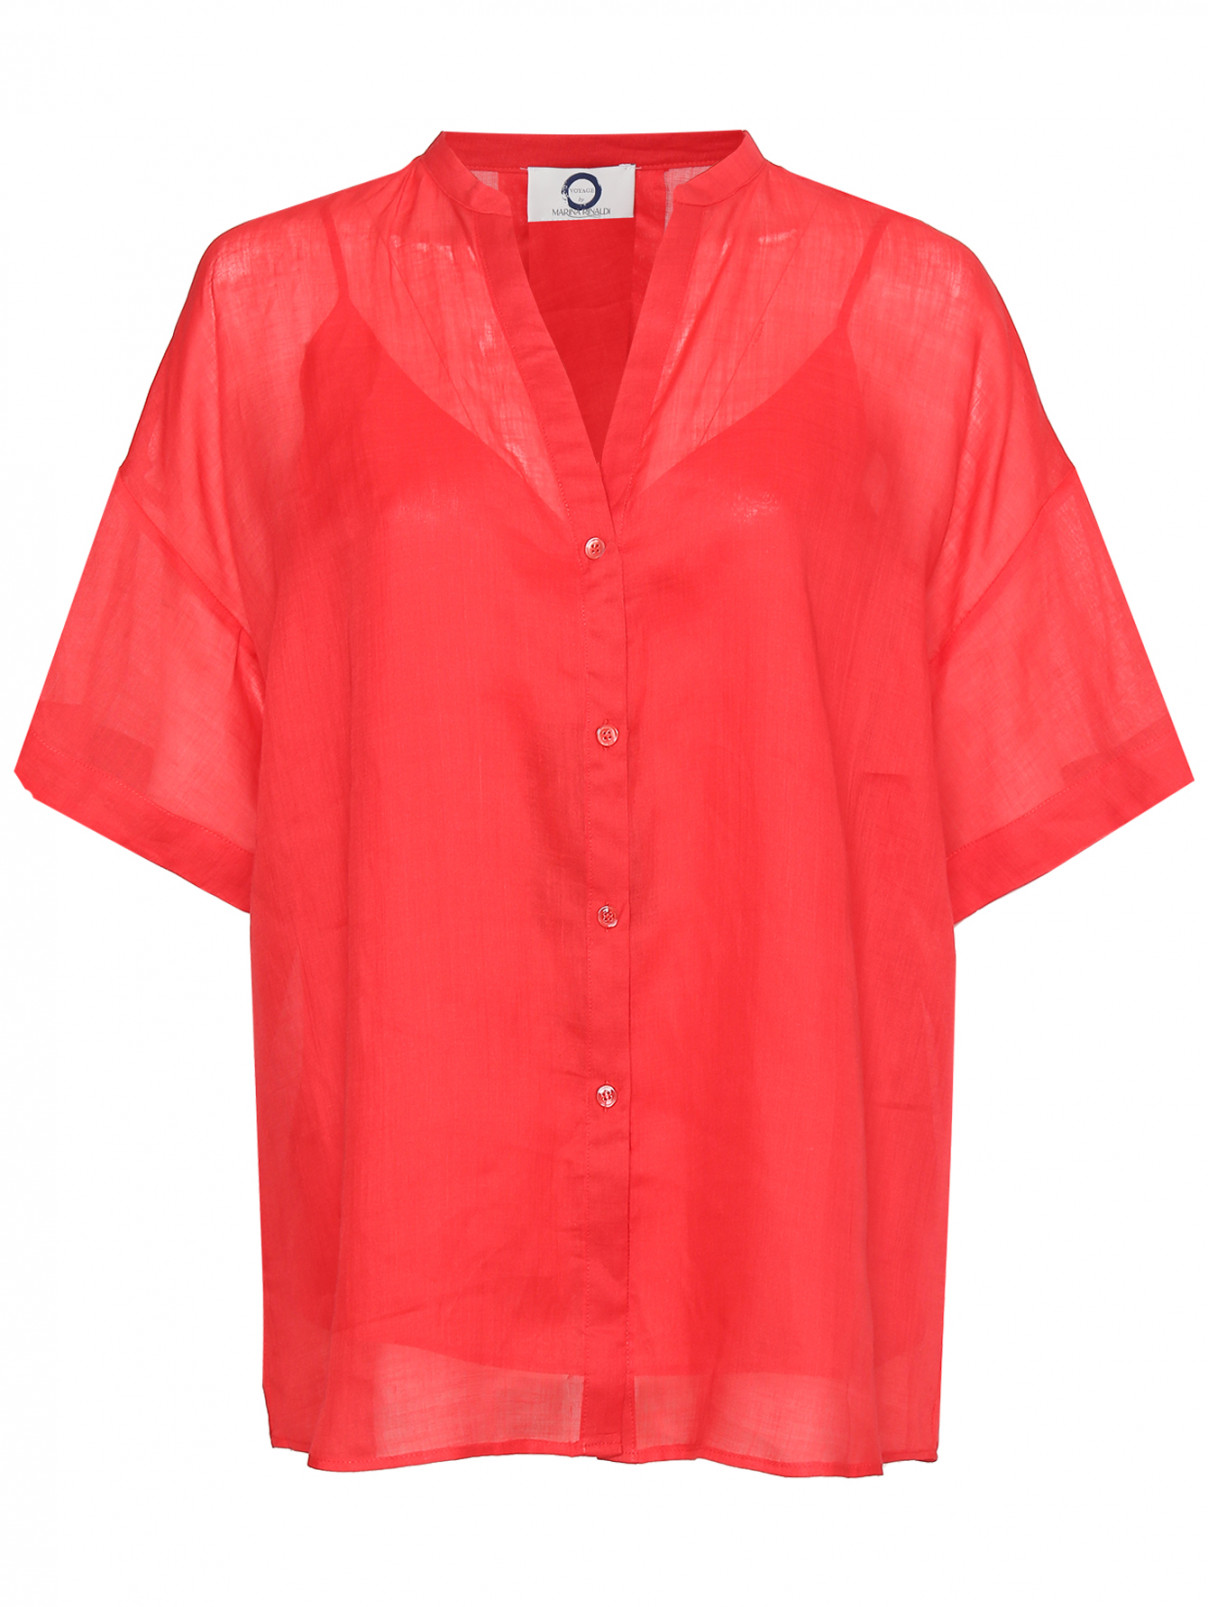 Блуза свободного кроя с короткими рукавами Marina Rinaldi  –  Общий вид  – Цвет:  Красный